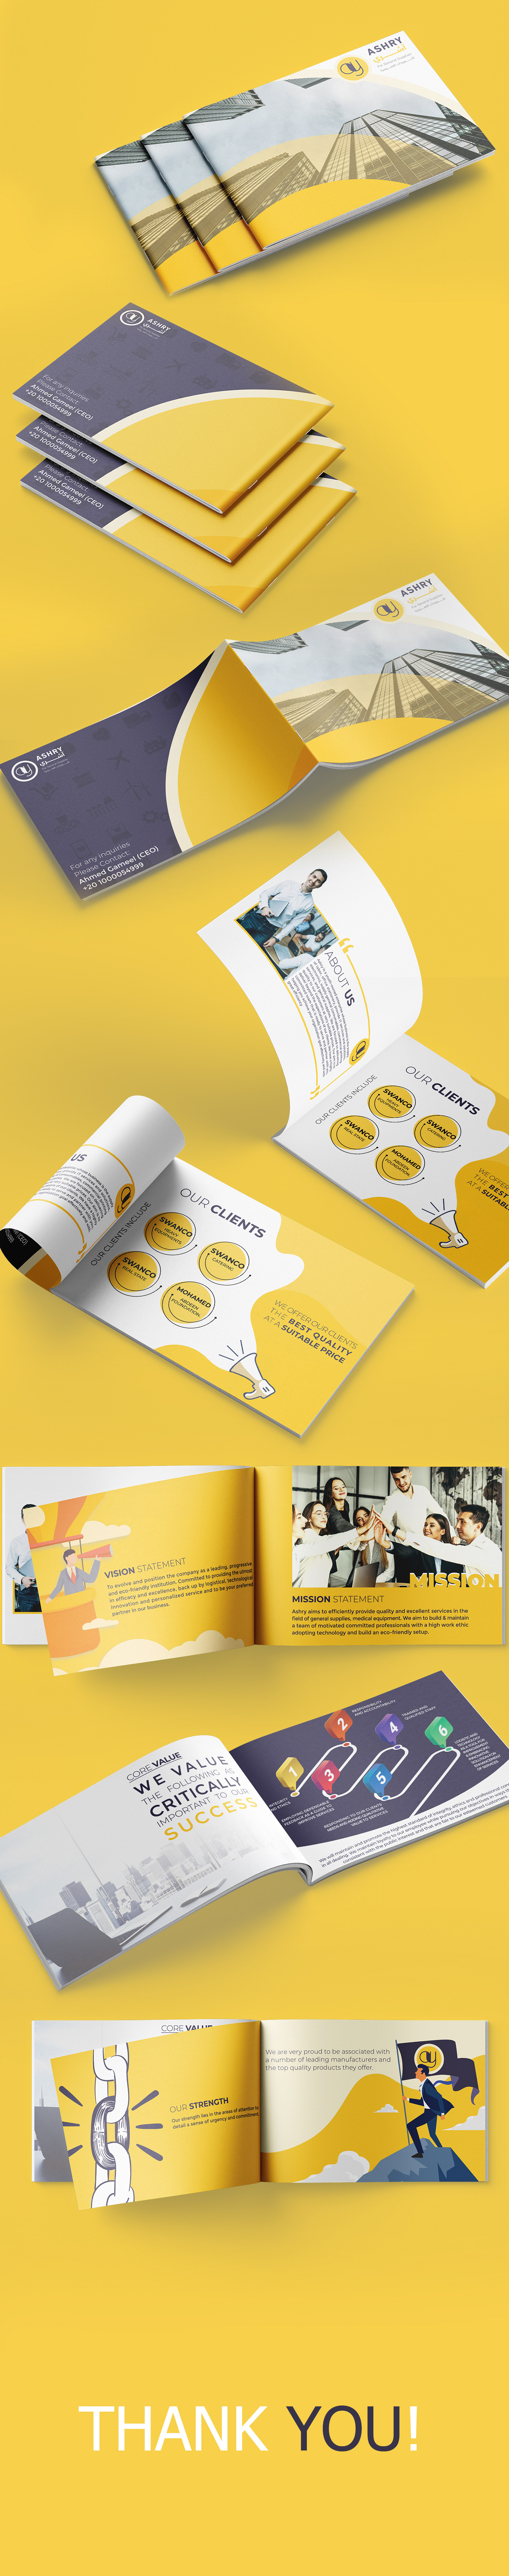 company company profile profile yellow Company Brochure Design Company profile design creative